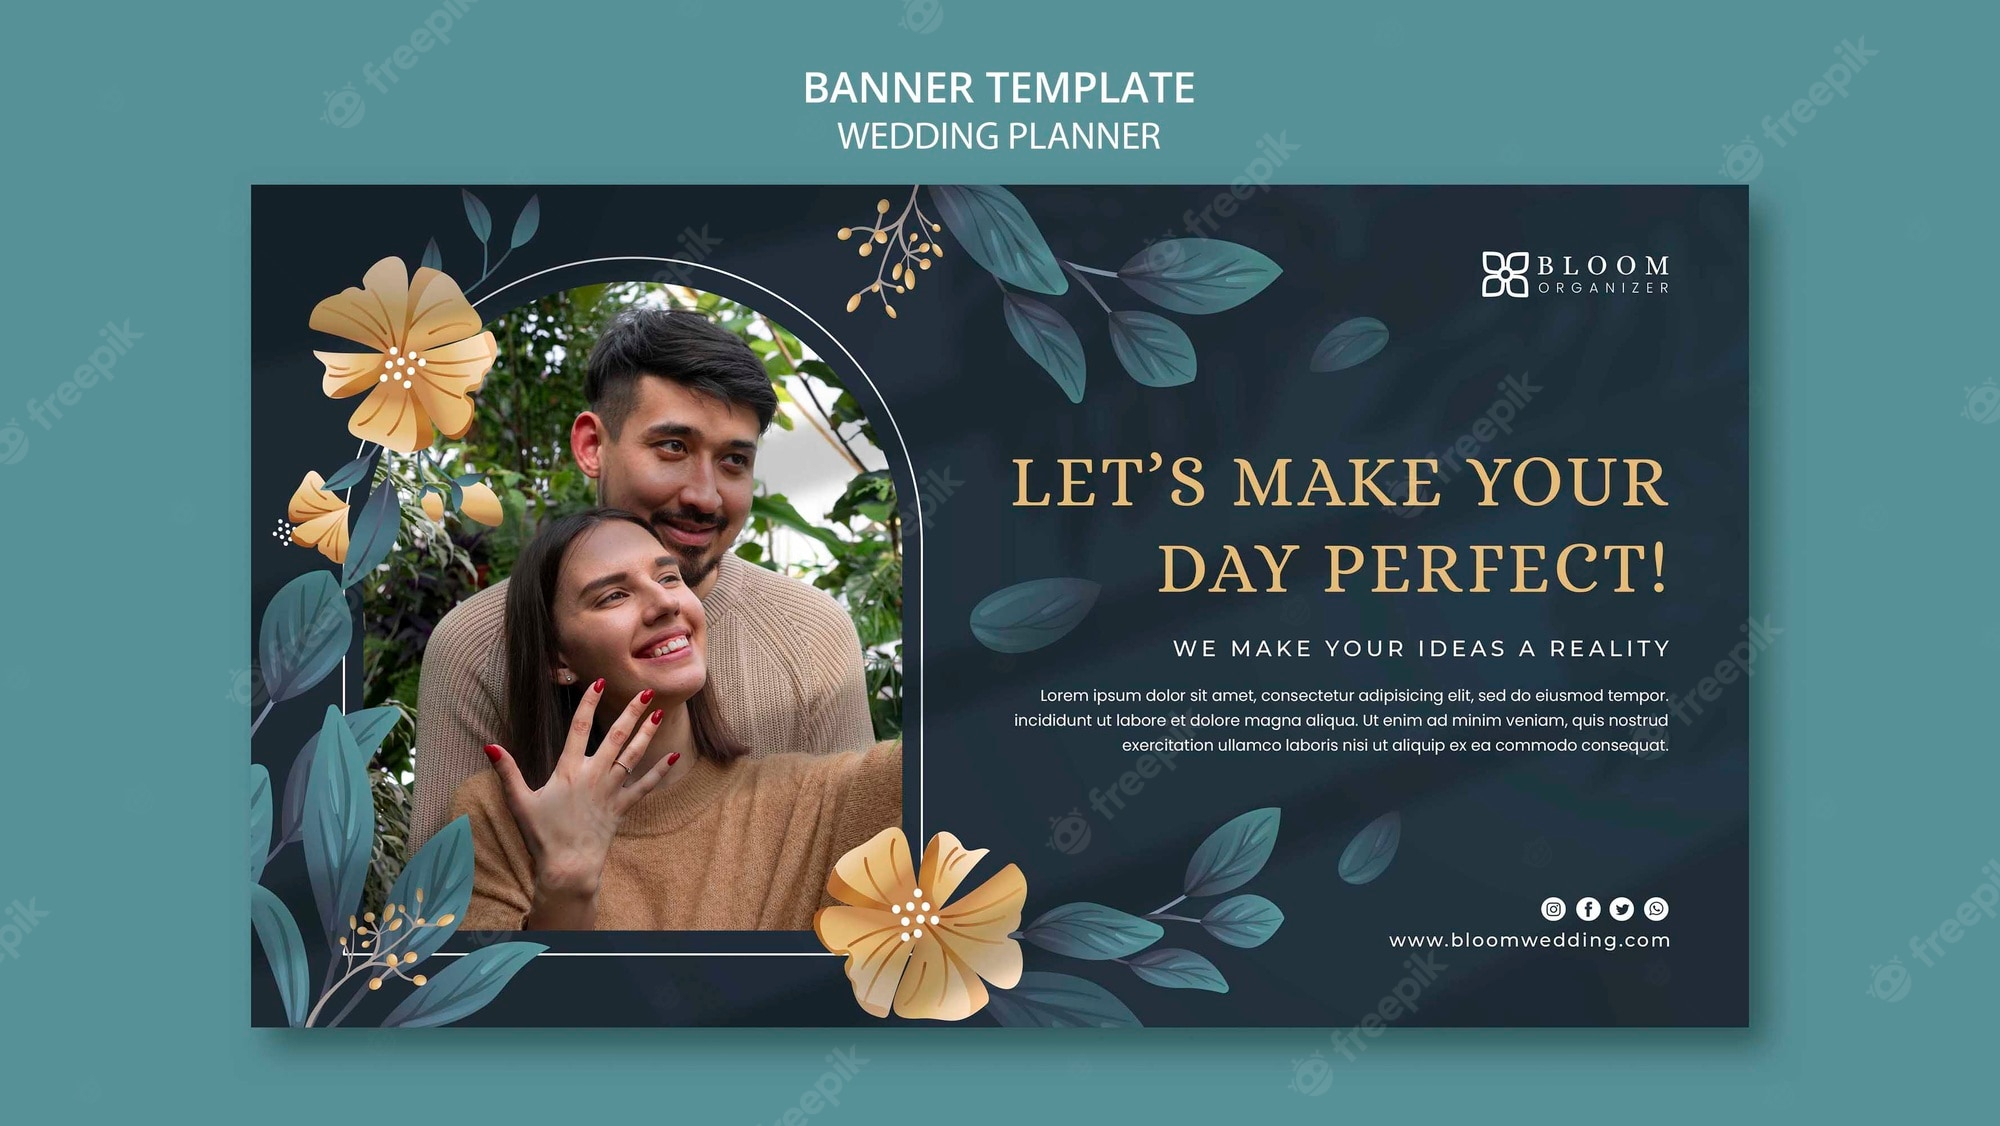 Free PSD  Wedding planner banner design template For Wedding Banner Design Templates